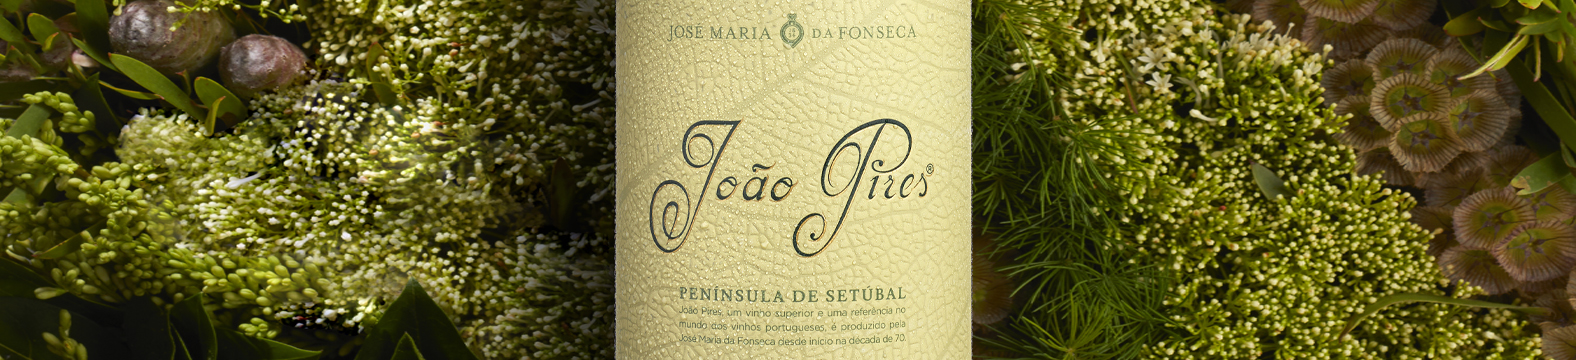 Omdesign assina rebranding do vinho João Pires